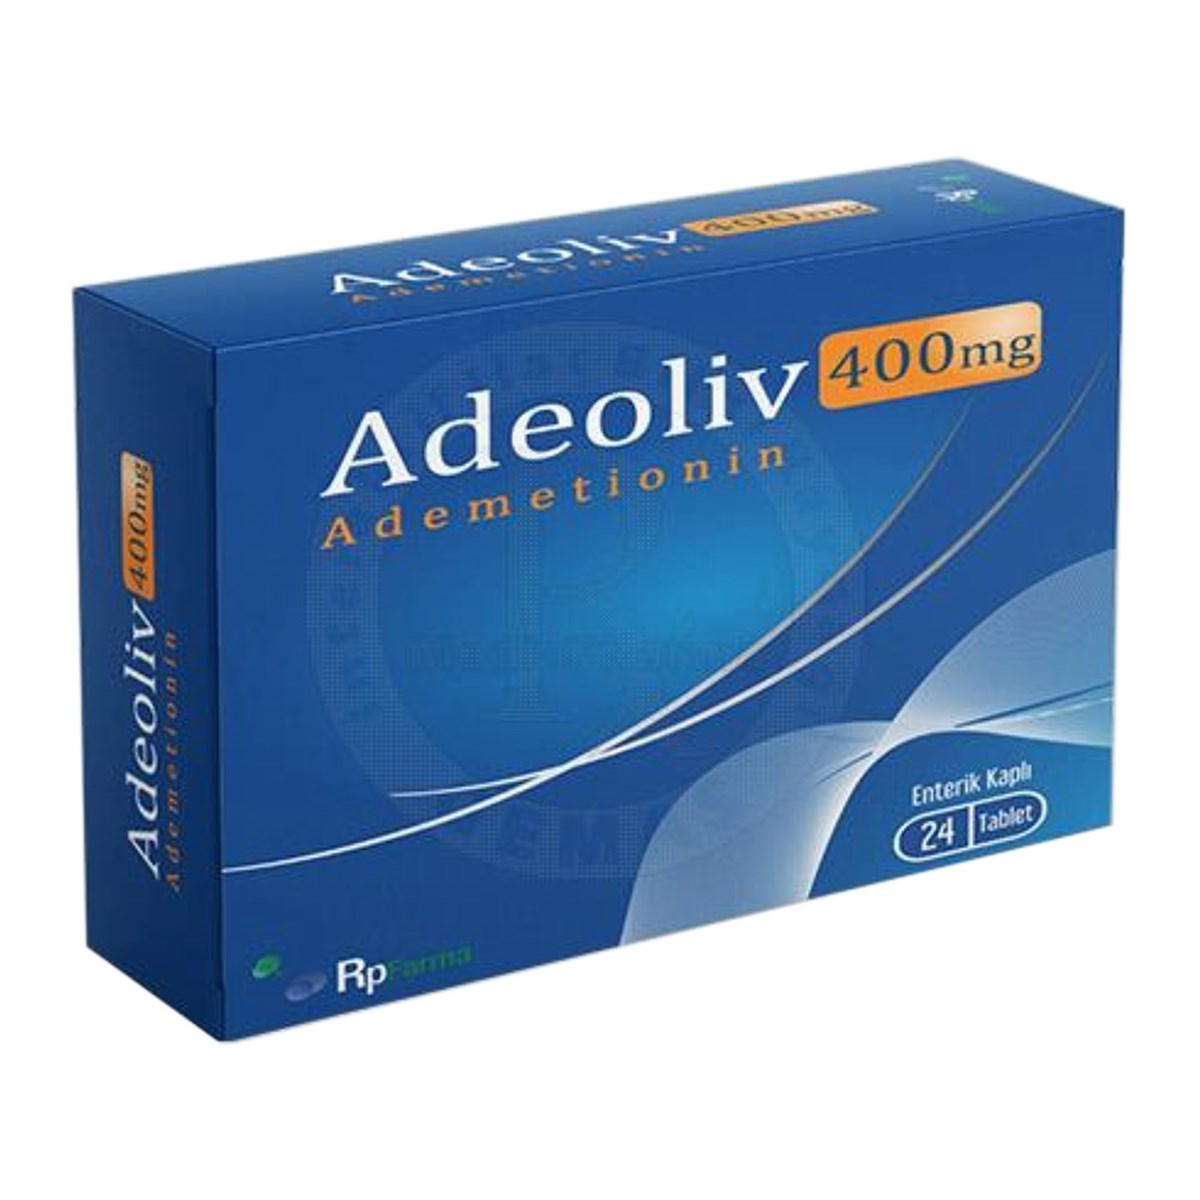 Adeoliv 400 mg (Ademetionin) 24 Tablet | Vitamin Dolabı